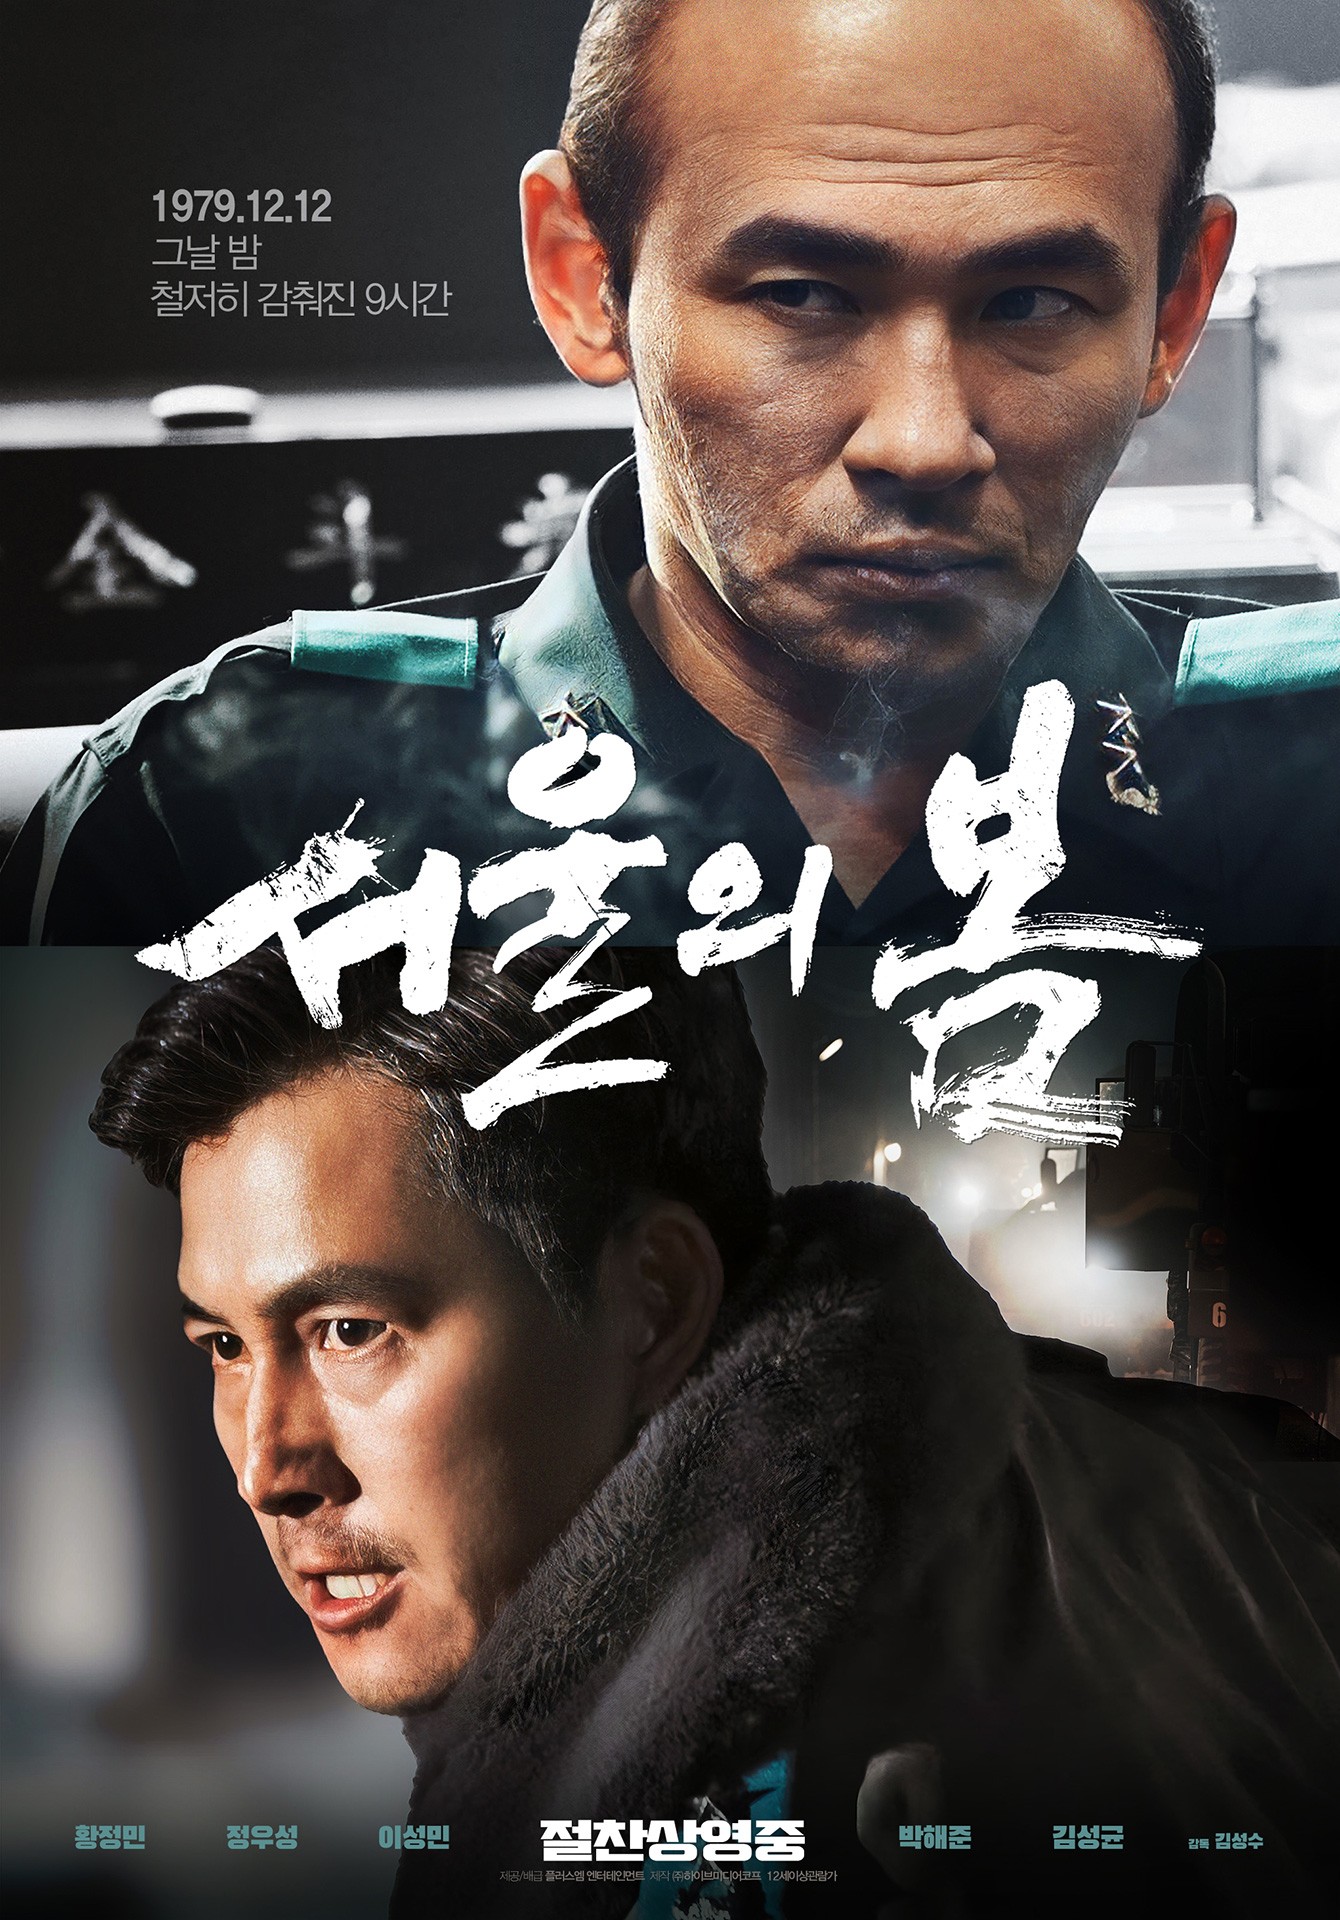 '<b>서울의 봄</b>', 불법 영상 유포..."엄연한 범죄, 강력 대응한다"